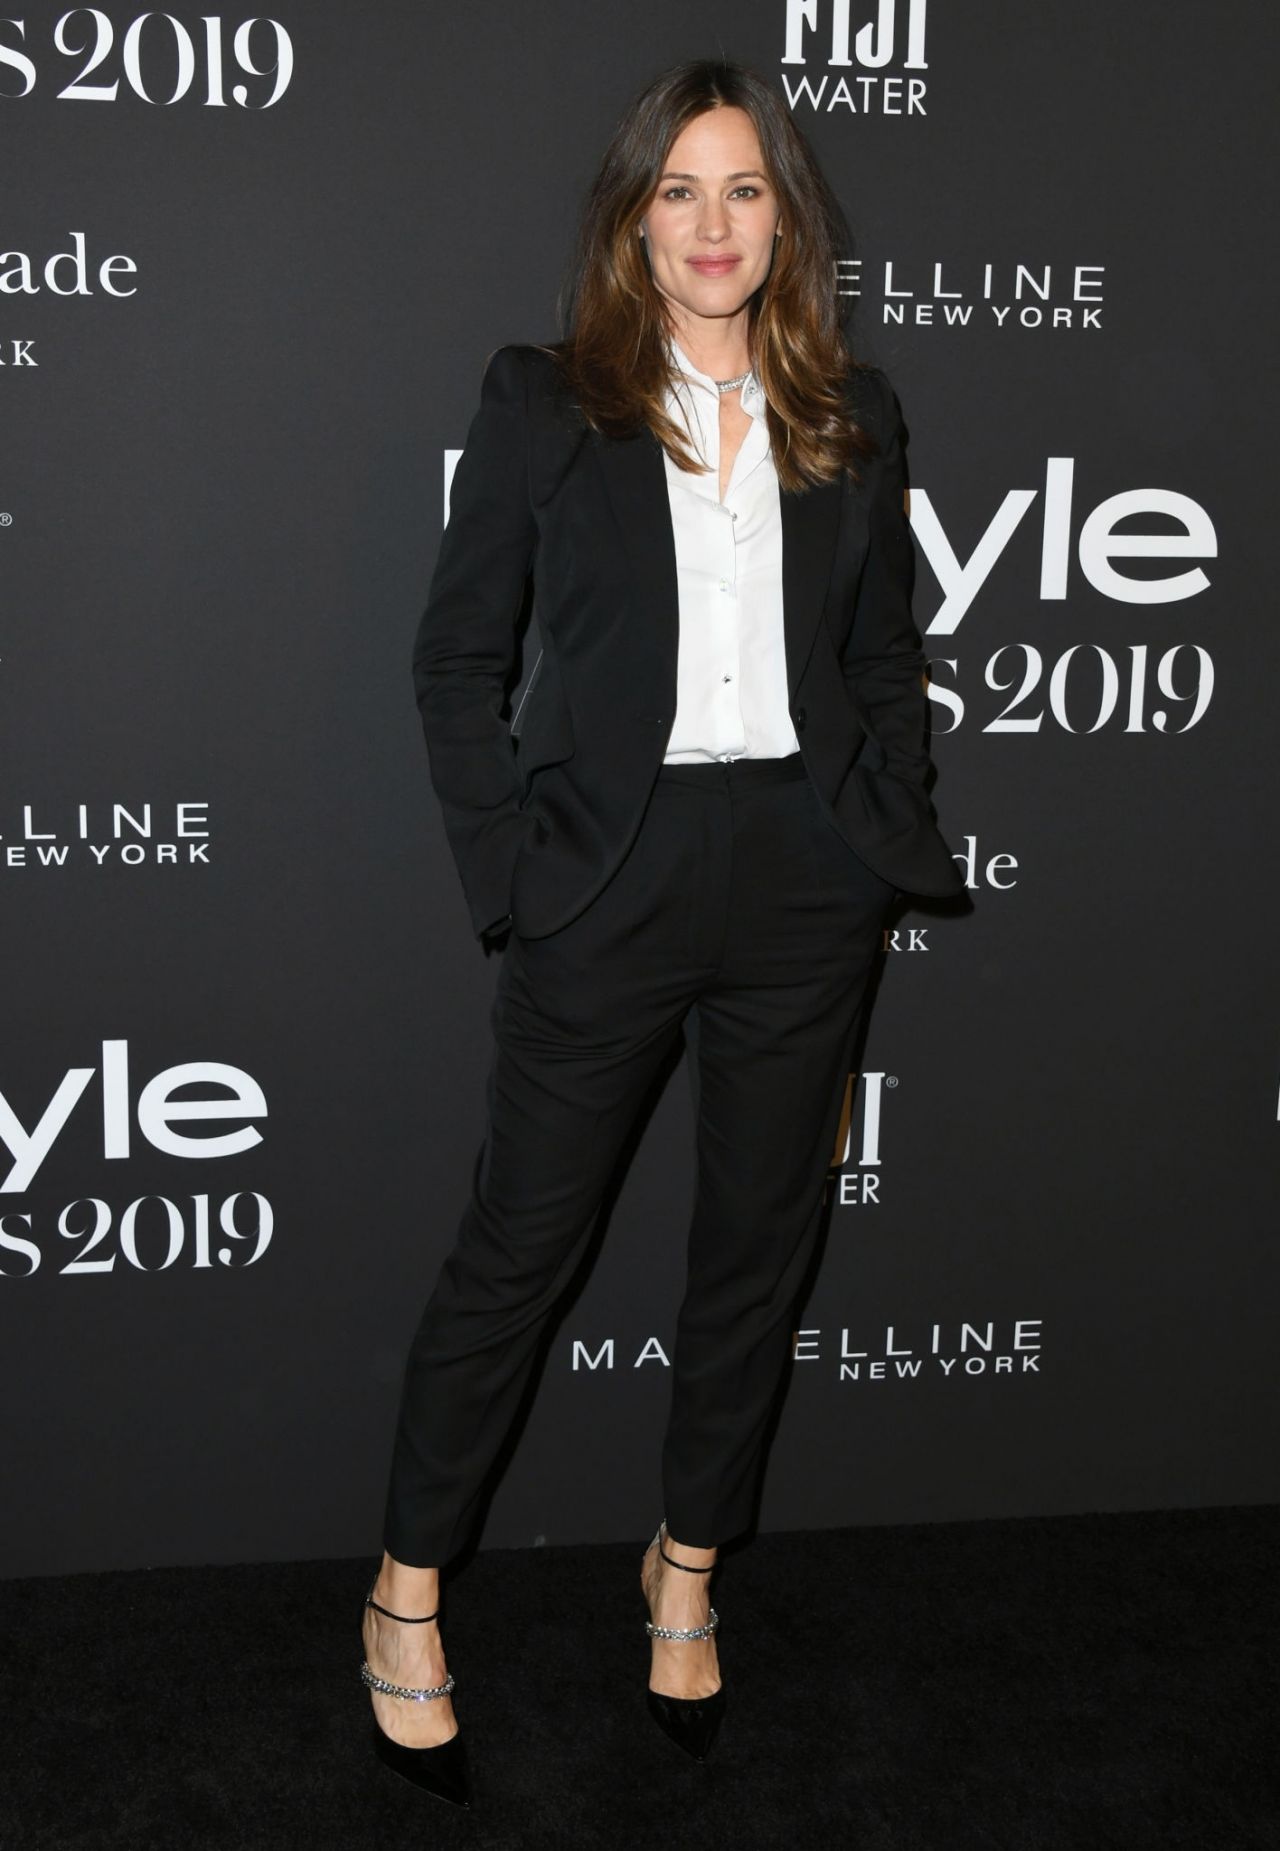 Jennifer Garner at 2019 Instyle Awards